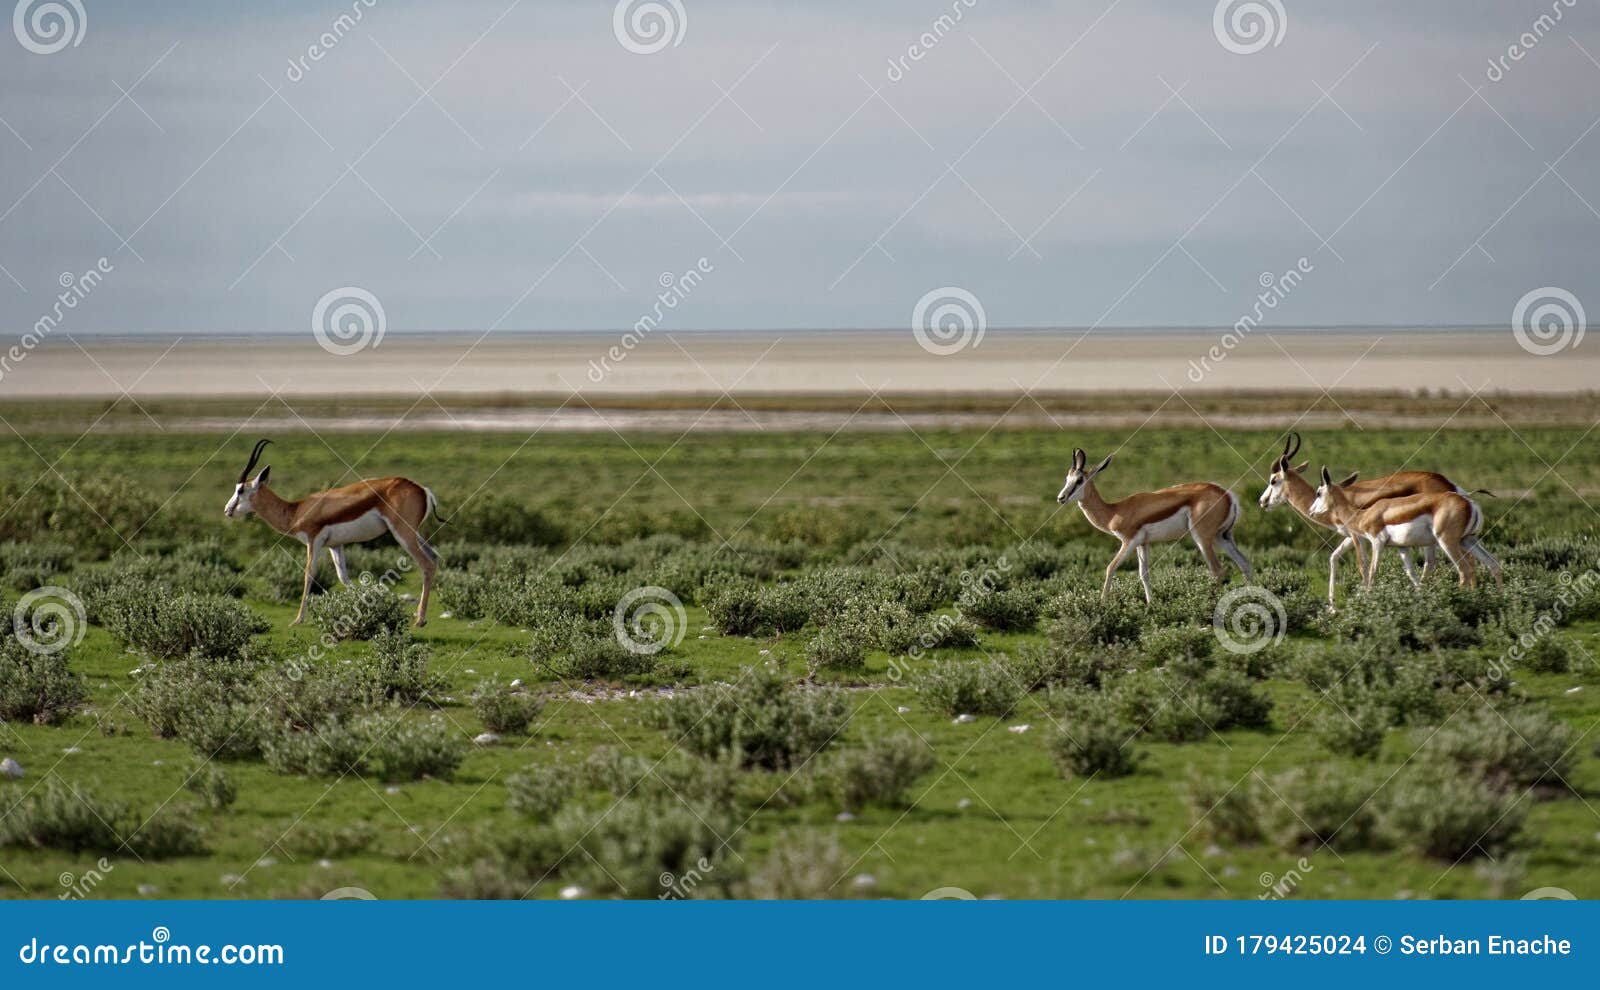 gazelles in field